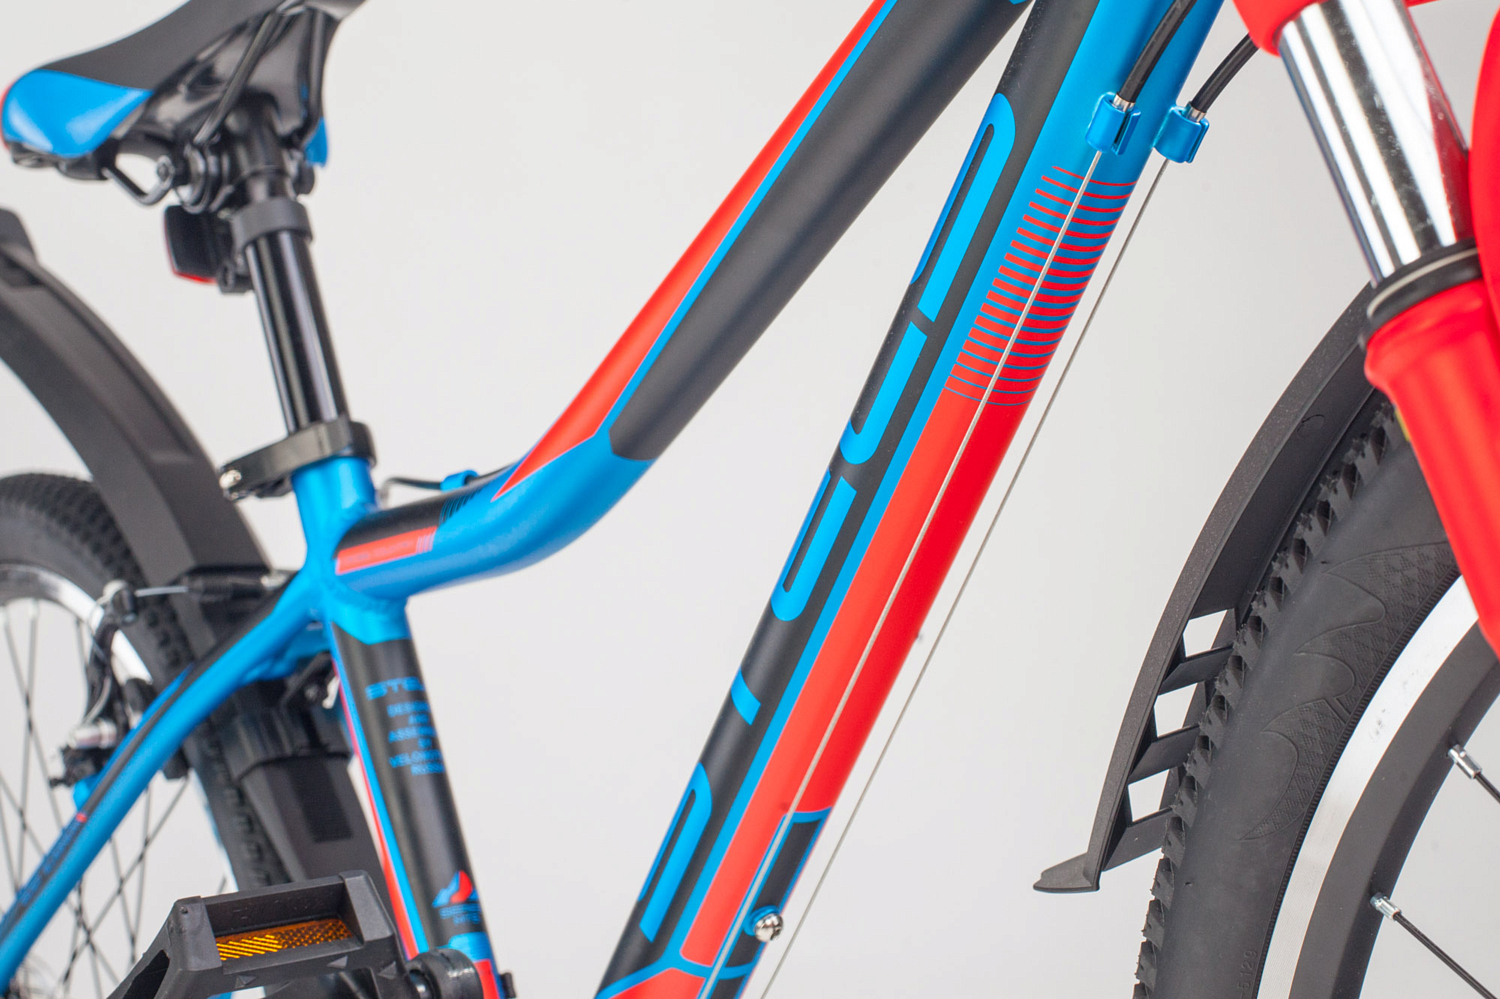 Велосипед Stels Navigator 450 V 24 V010 2020 Синий/Красный/Черный